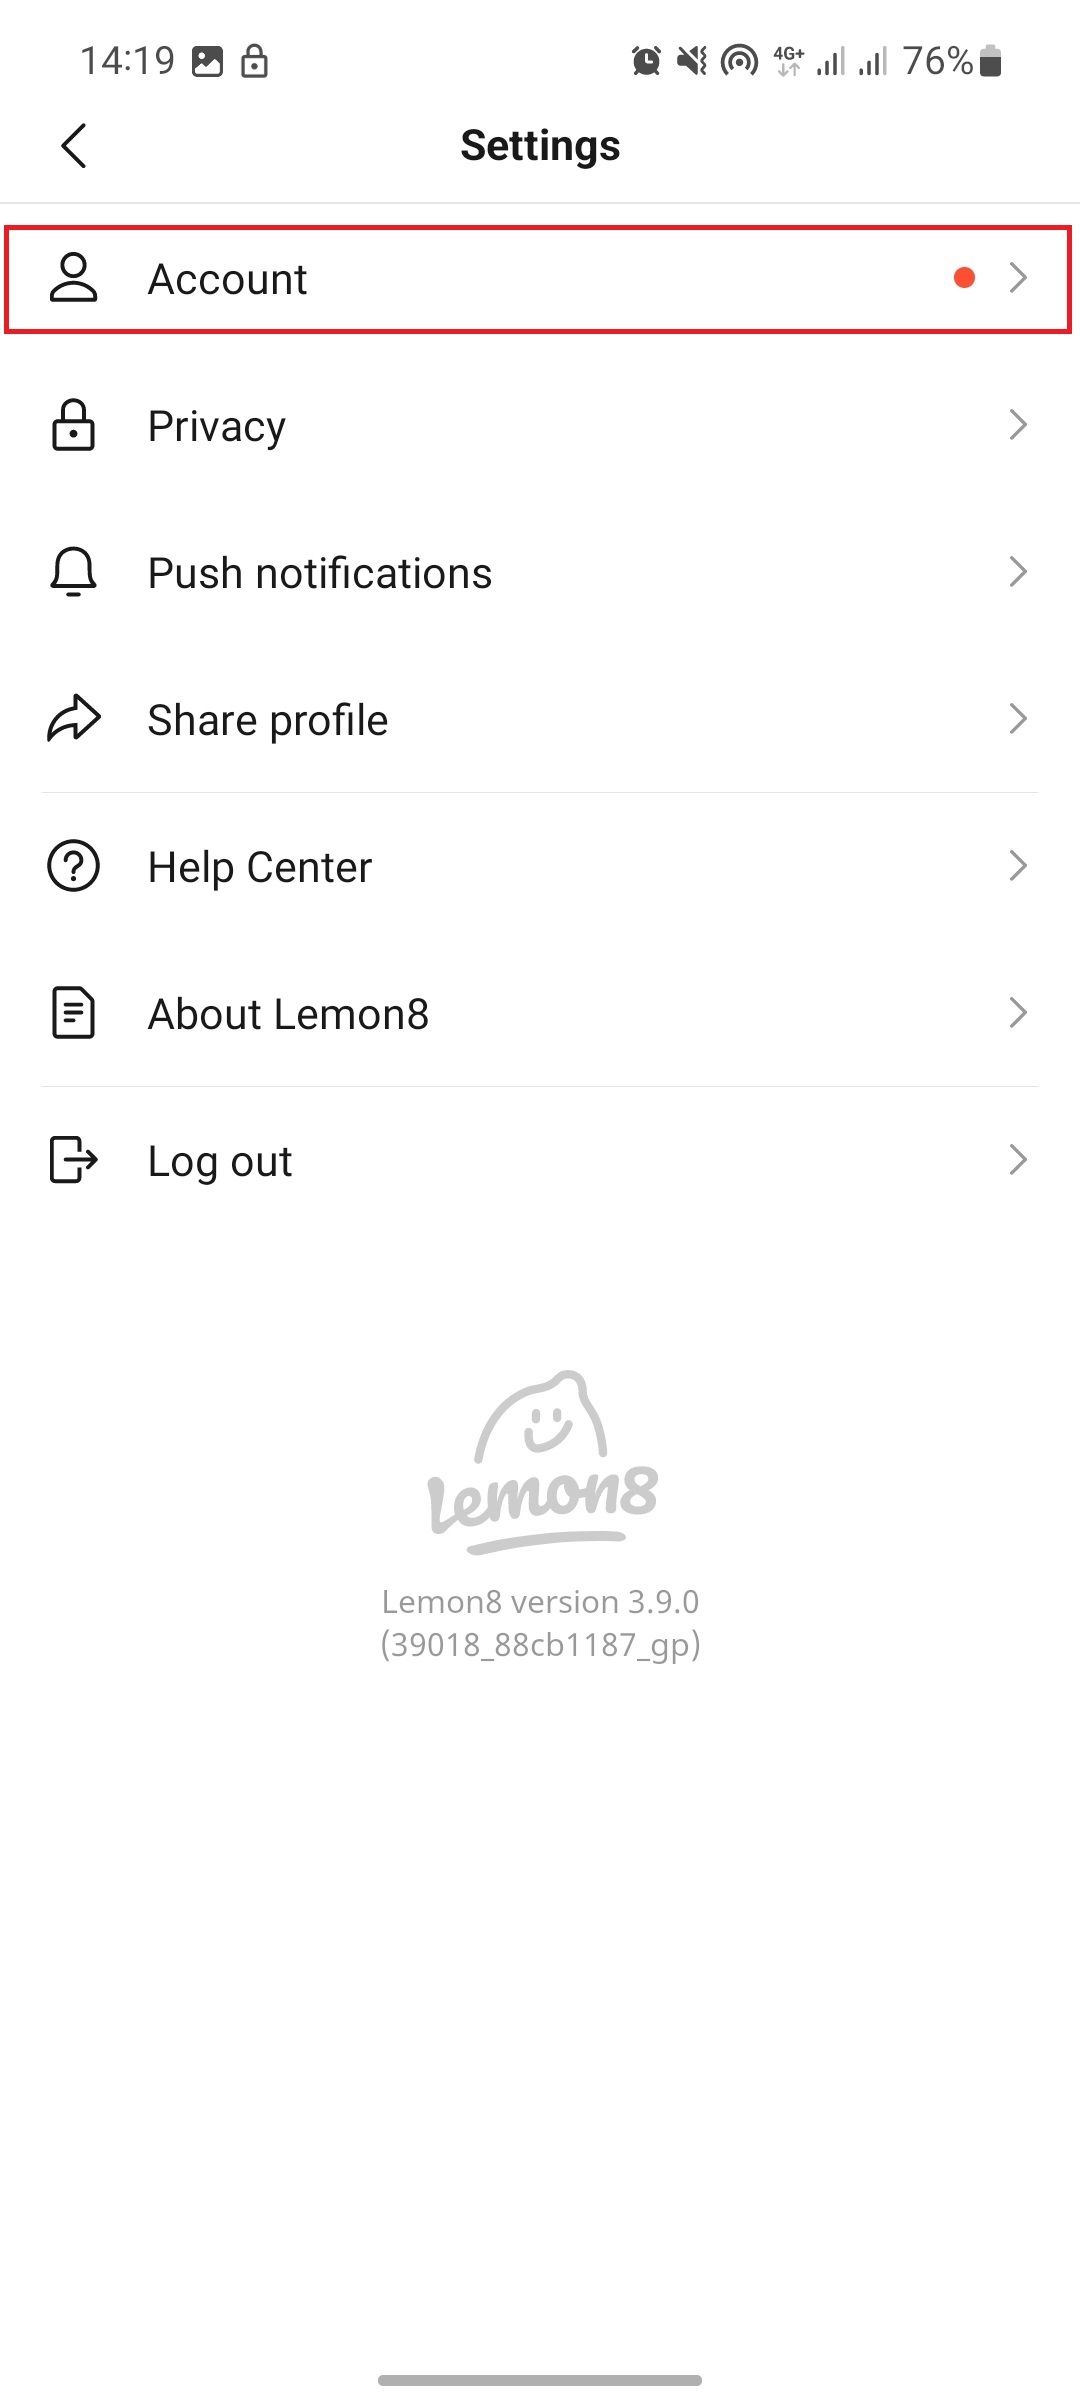 Lemon8 settings page